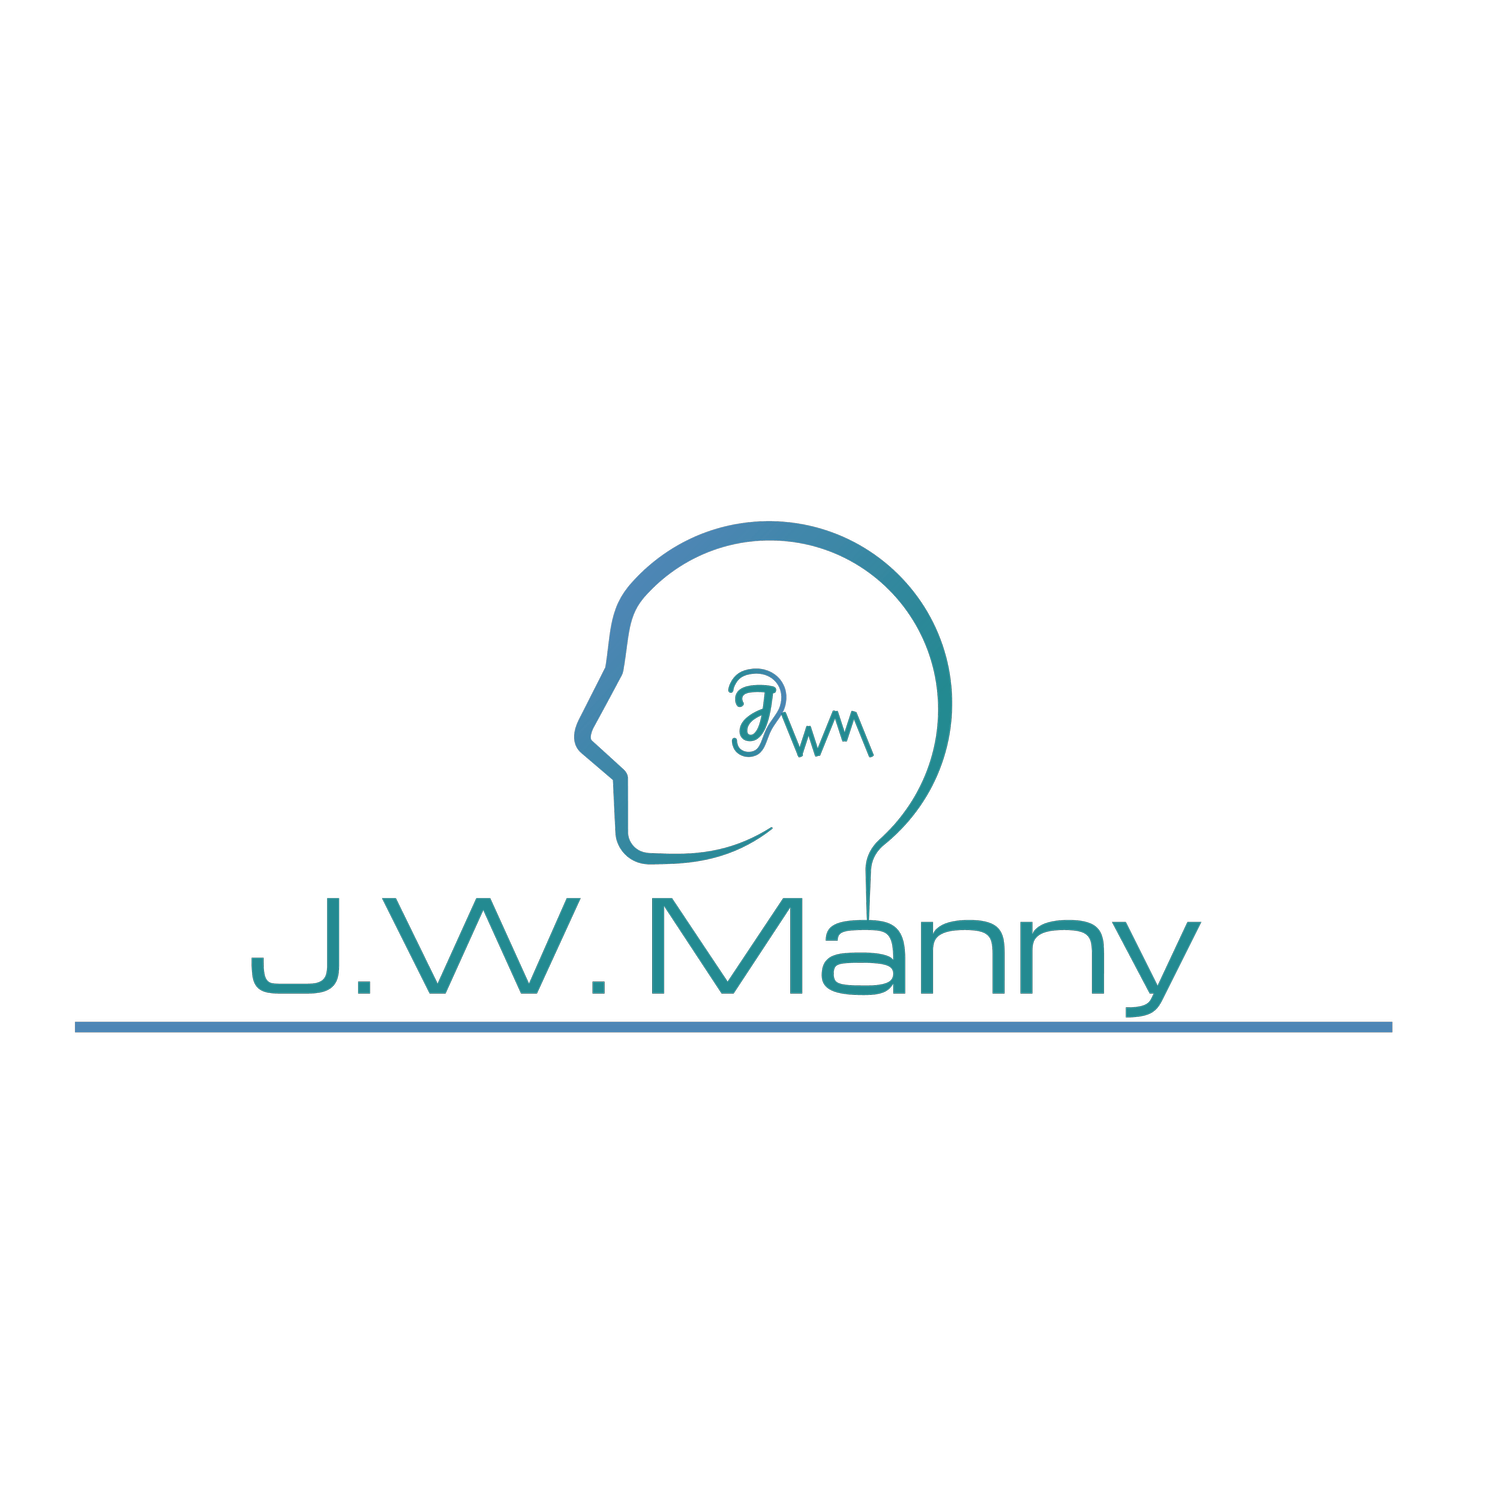 J.W. Manny Inc.